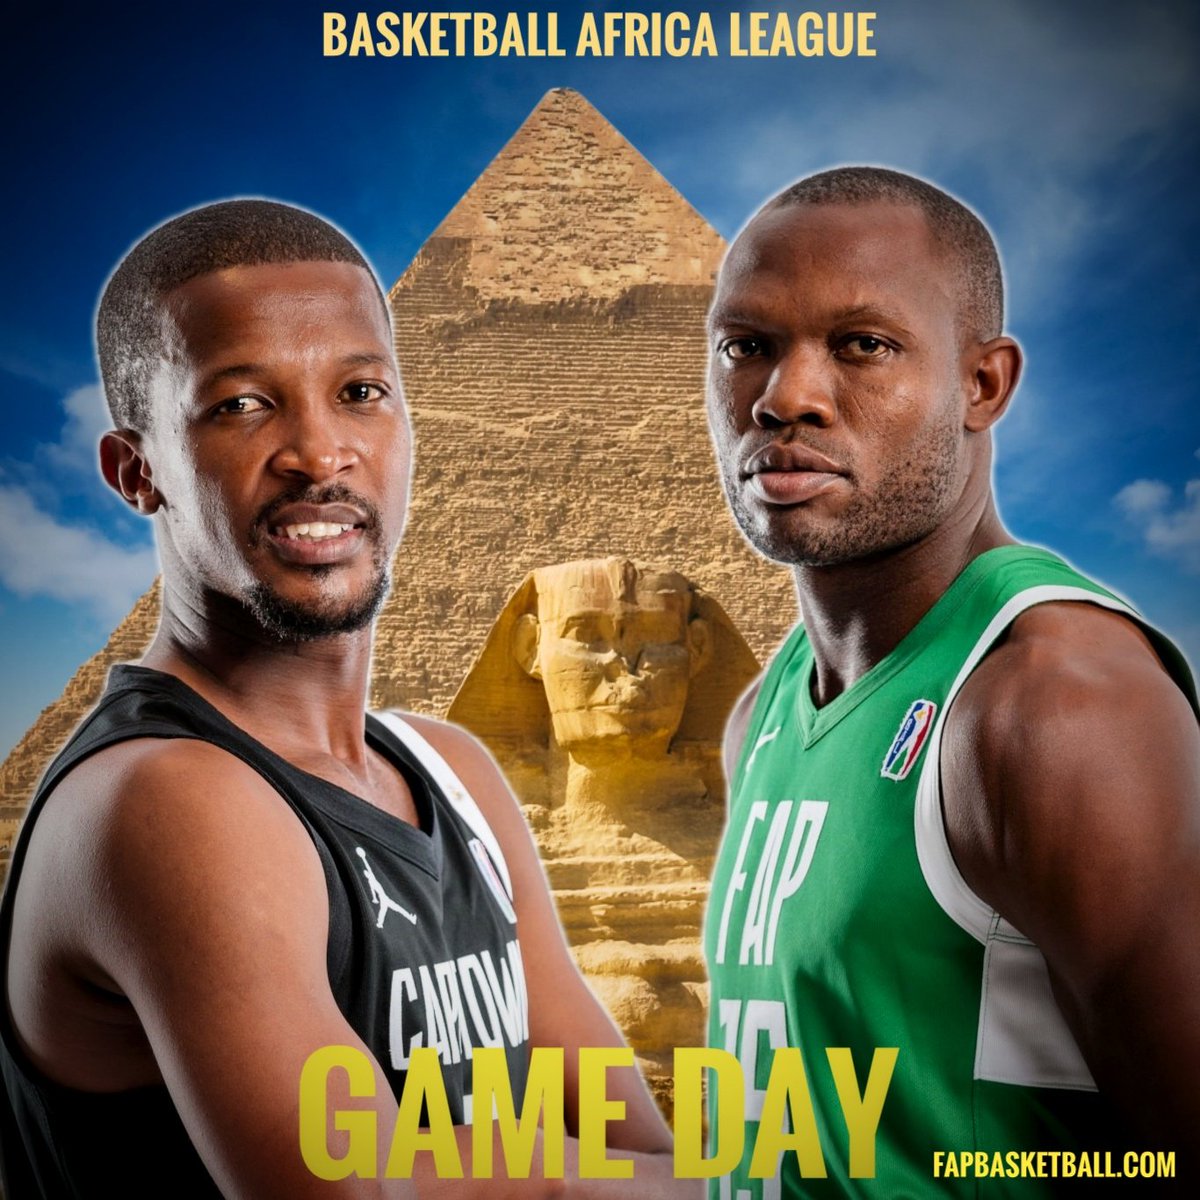 Game Day ! Hot Game at the pharaons Land 🔥 @fAP vs @CapeTownTigers Today 11am Egy -10am CMR @theBAL @AfricaNBAFans @BlockMamba4life @MormanDeshaun @LaBriceAnce @CedricTsangue @EAkumenzoh @UsherKomugisha @amadougallofall @AfroBasket @MalickDaho @NBA_Africa @FECABASKET @EBBFED